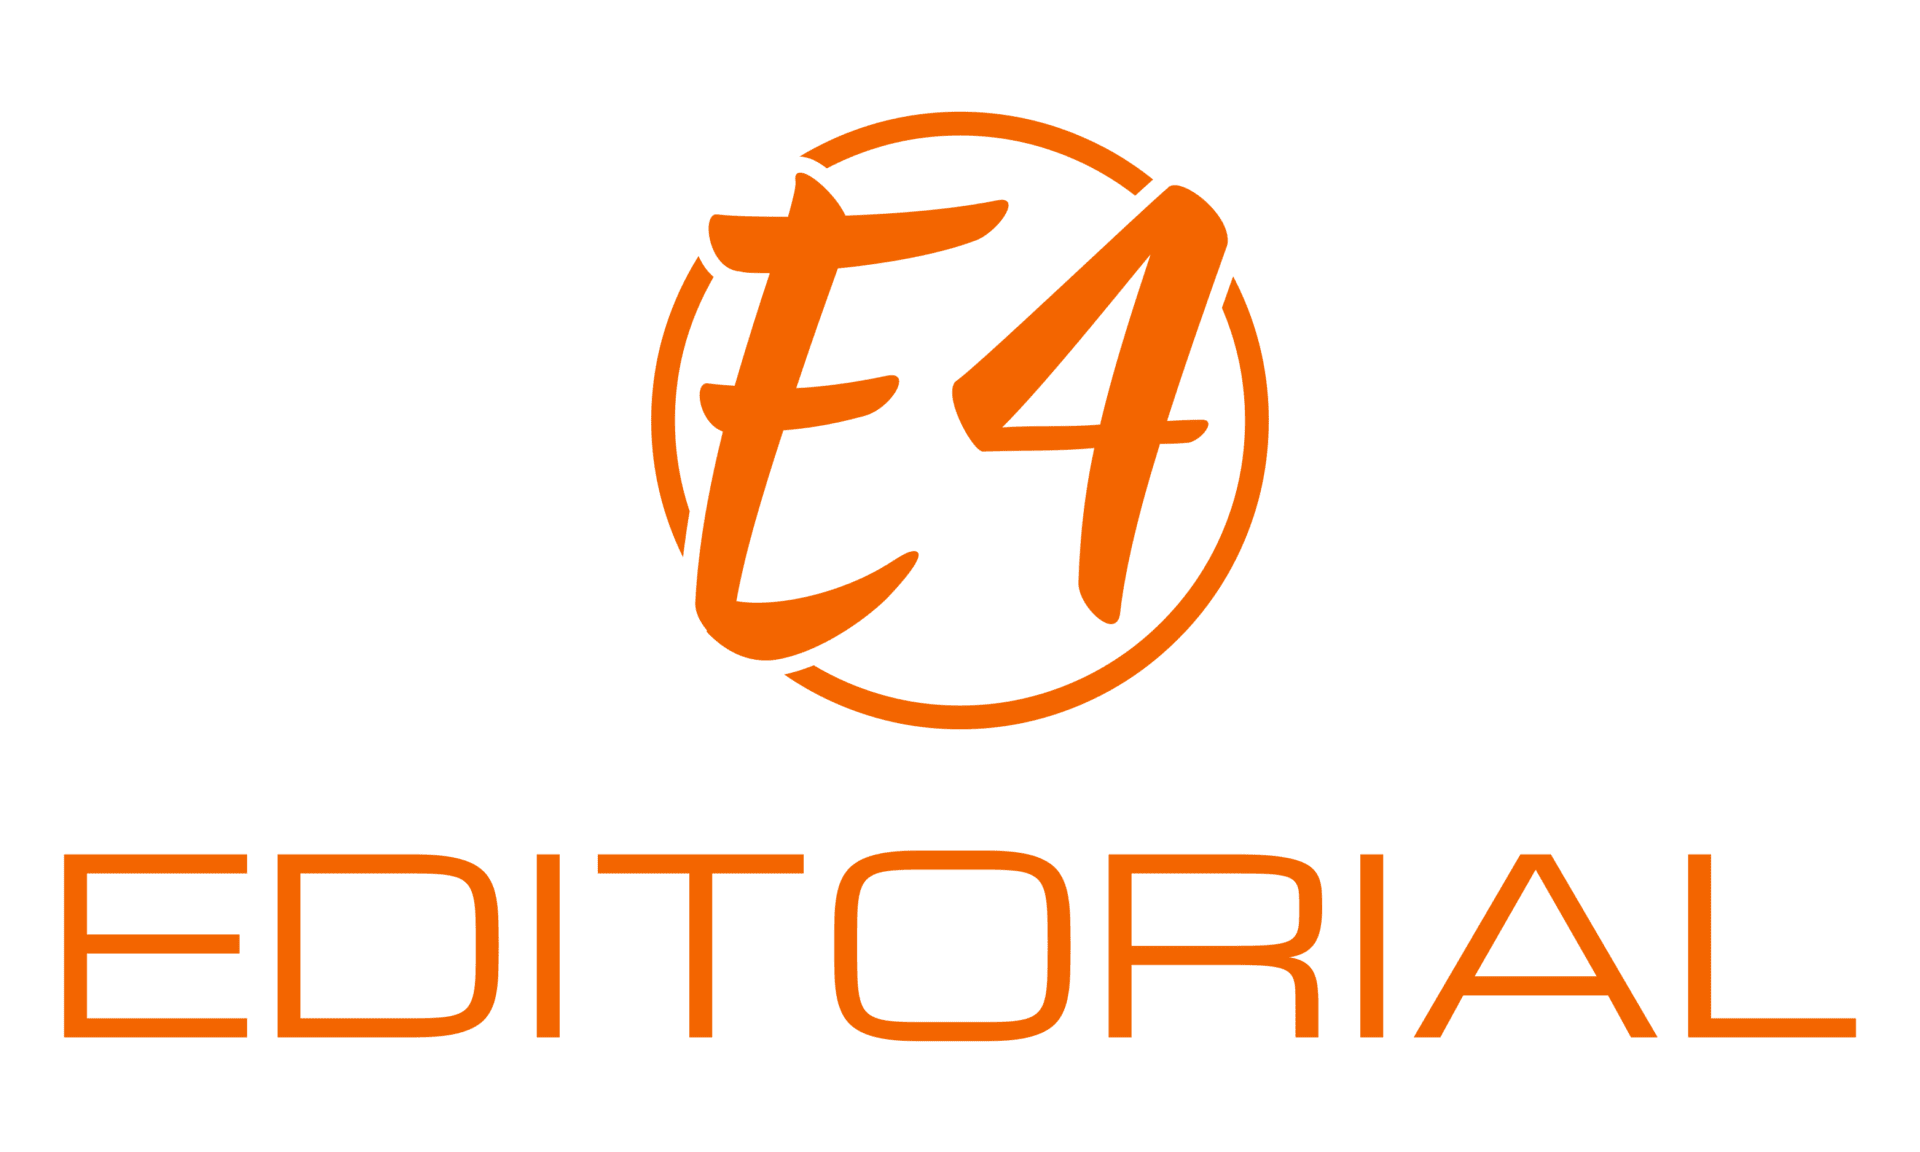 E4 Editorial Services